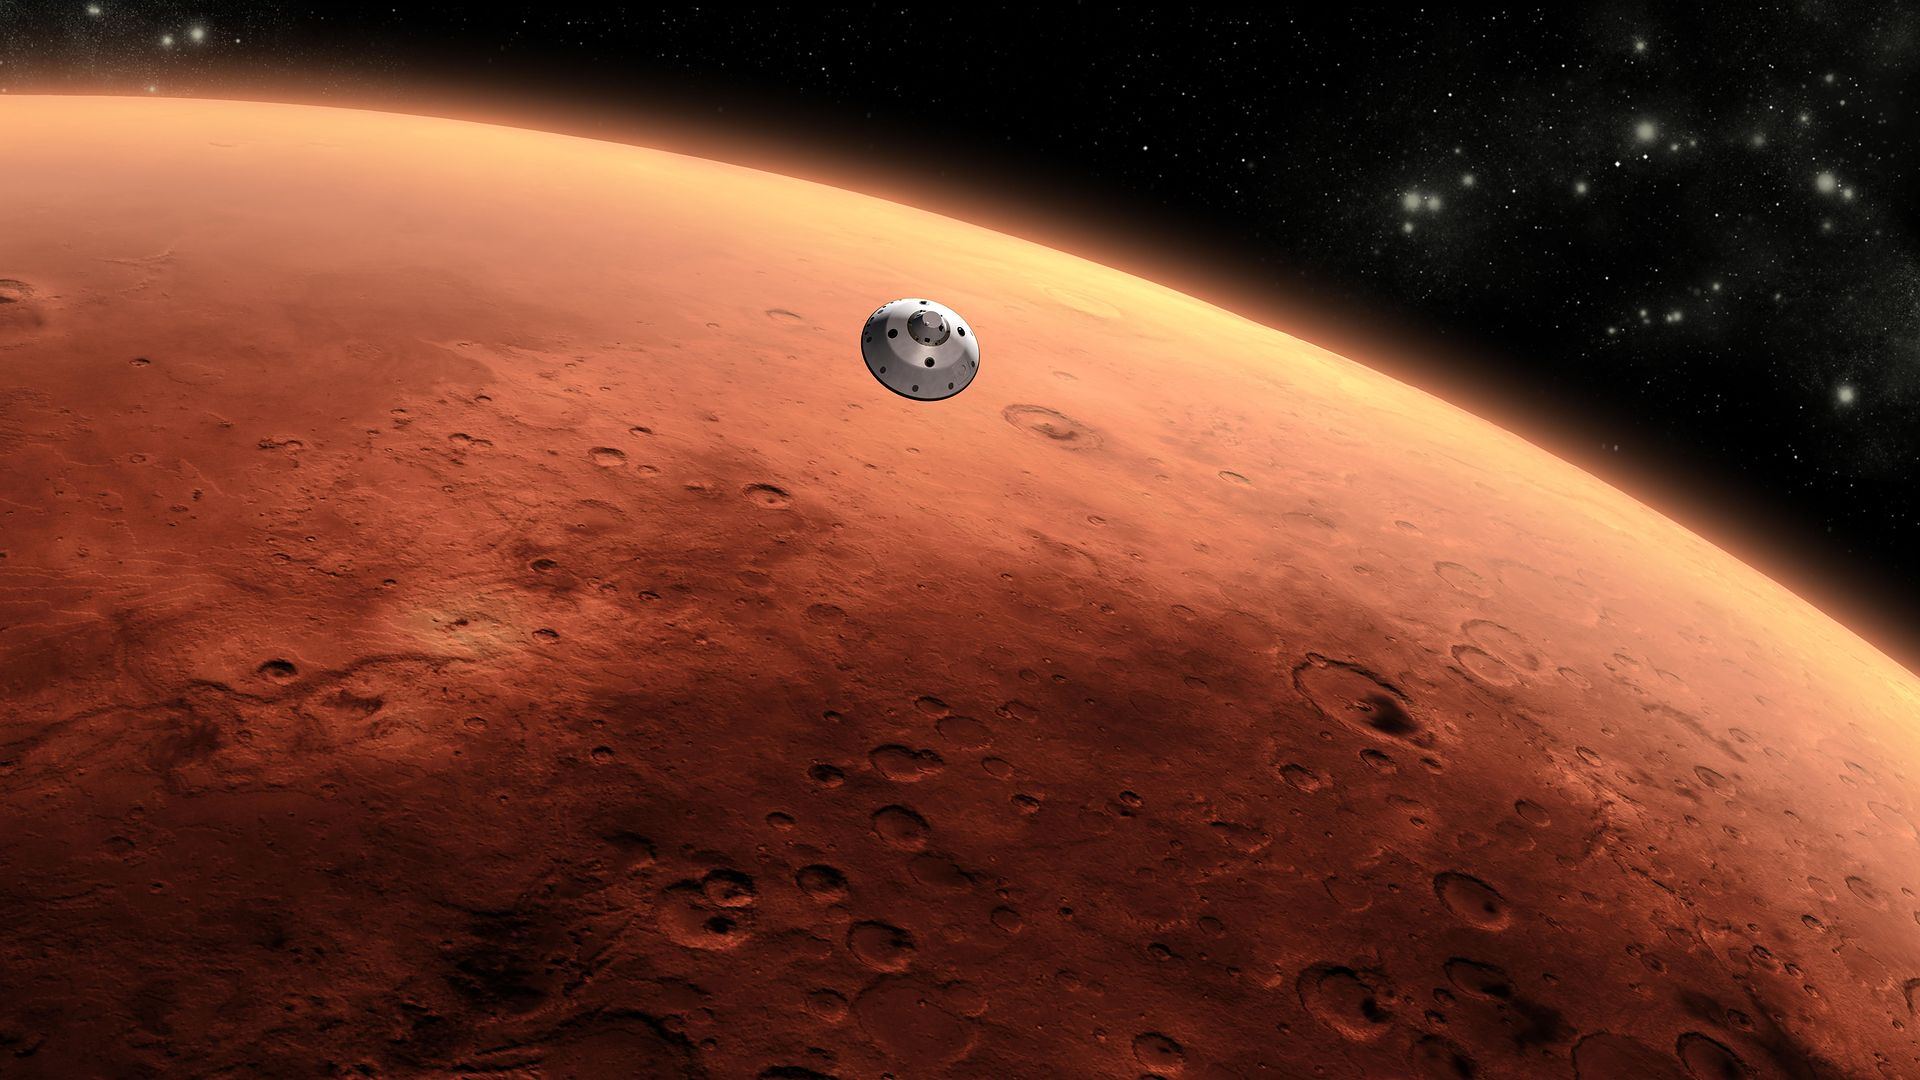 Zapiera dech w piersiach. Chciałoby się to zobaczyć na własne oczy… Źródło: NASA - Technologia da radę, ale nasze ciała nie przetrwają kolonizacji Marsa - dokument - 2021-01-25